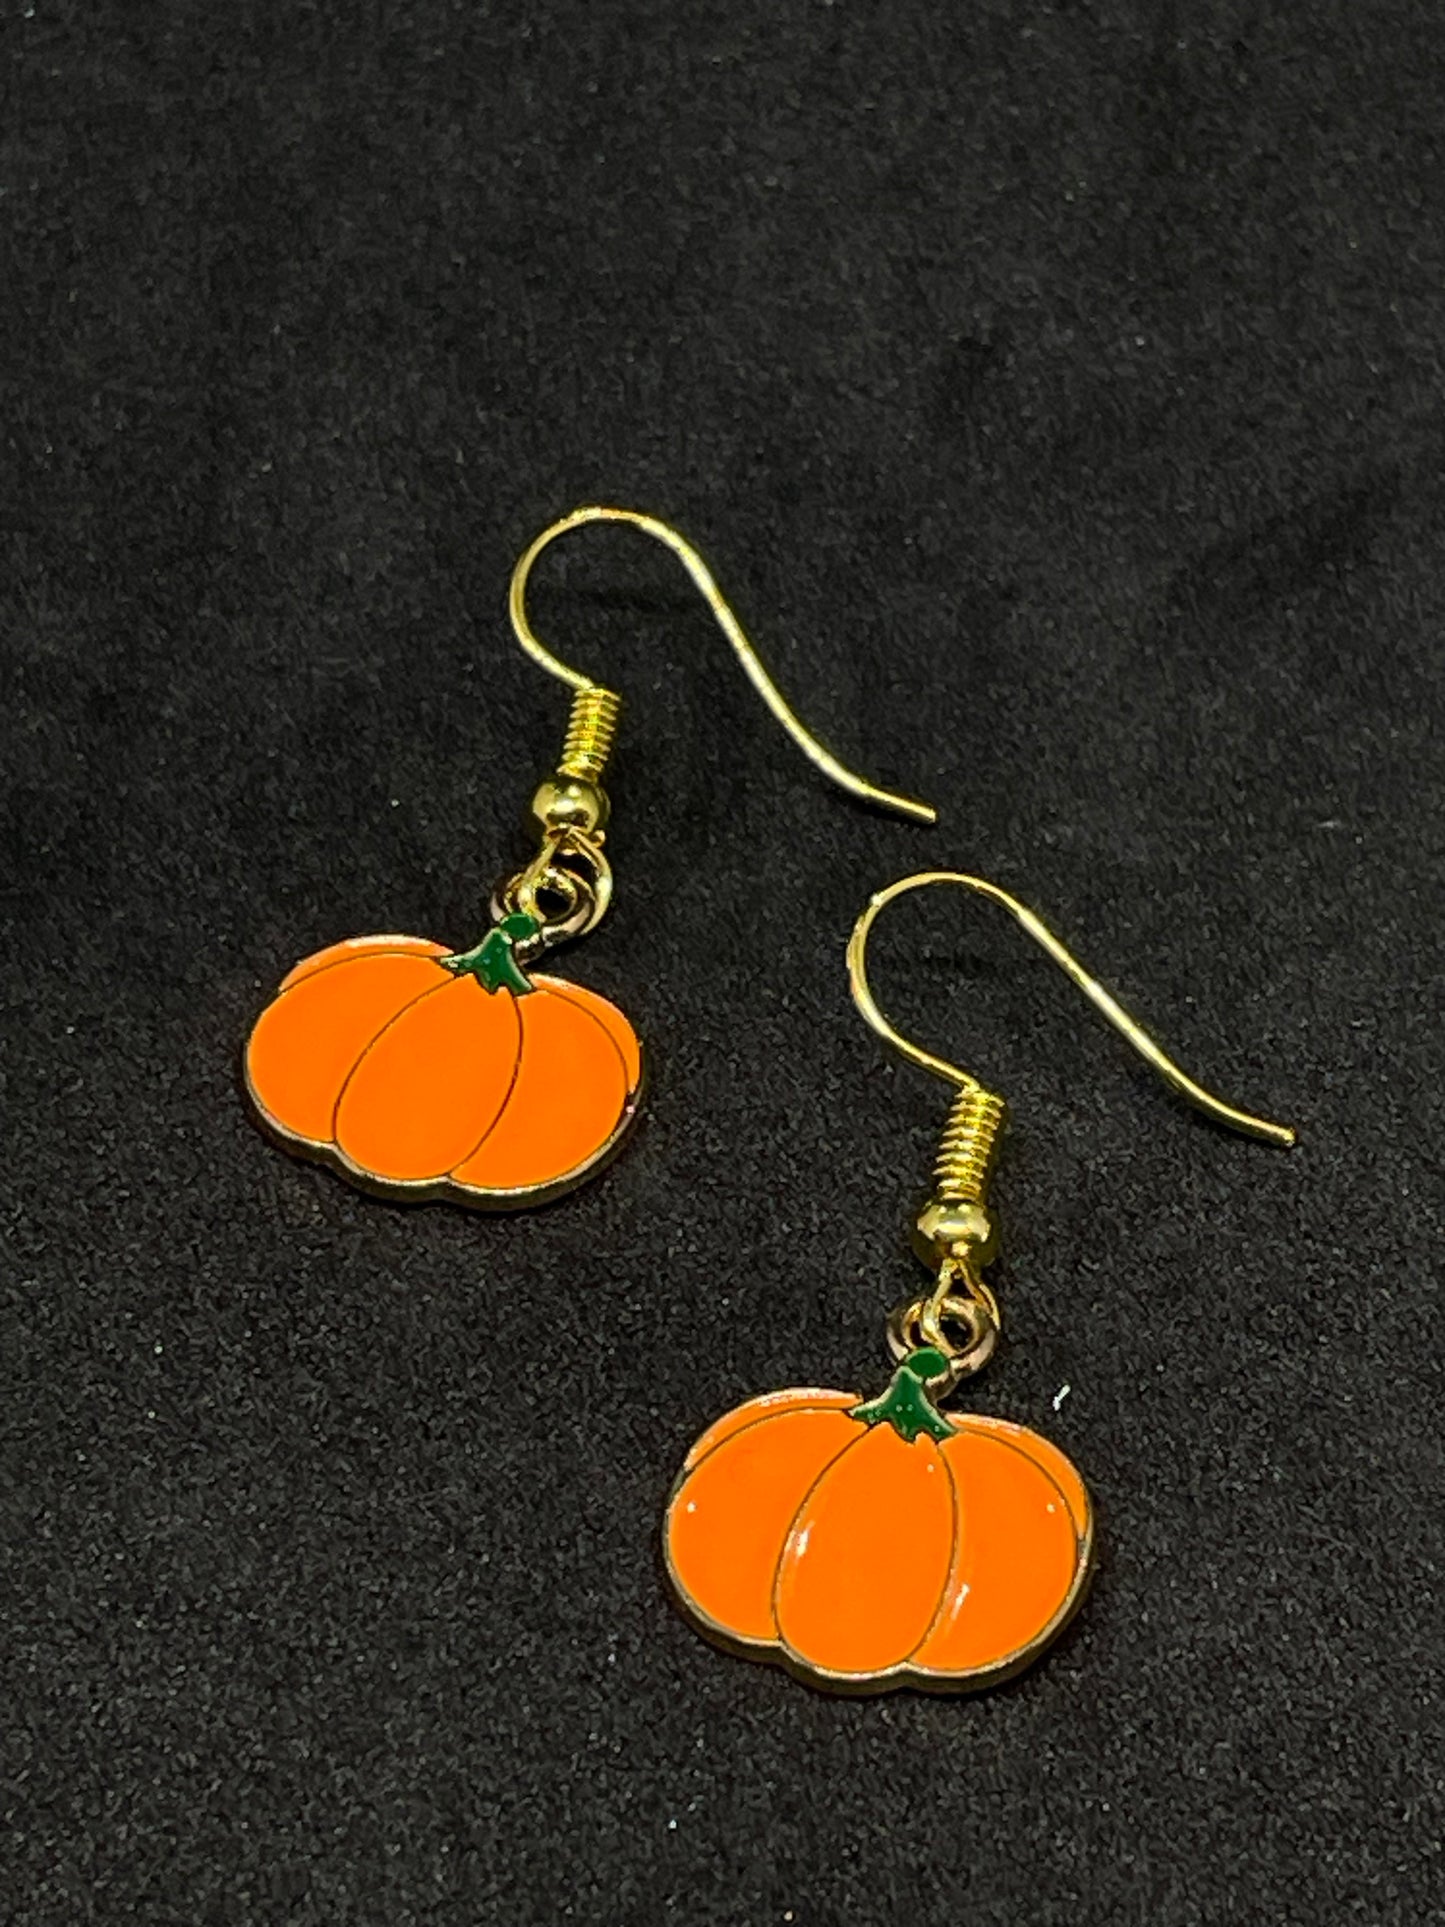 Pumpkin charm drop earrings with gold hooks